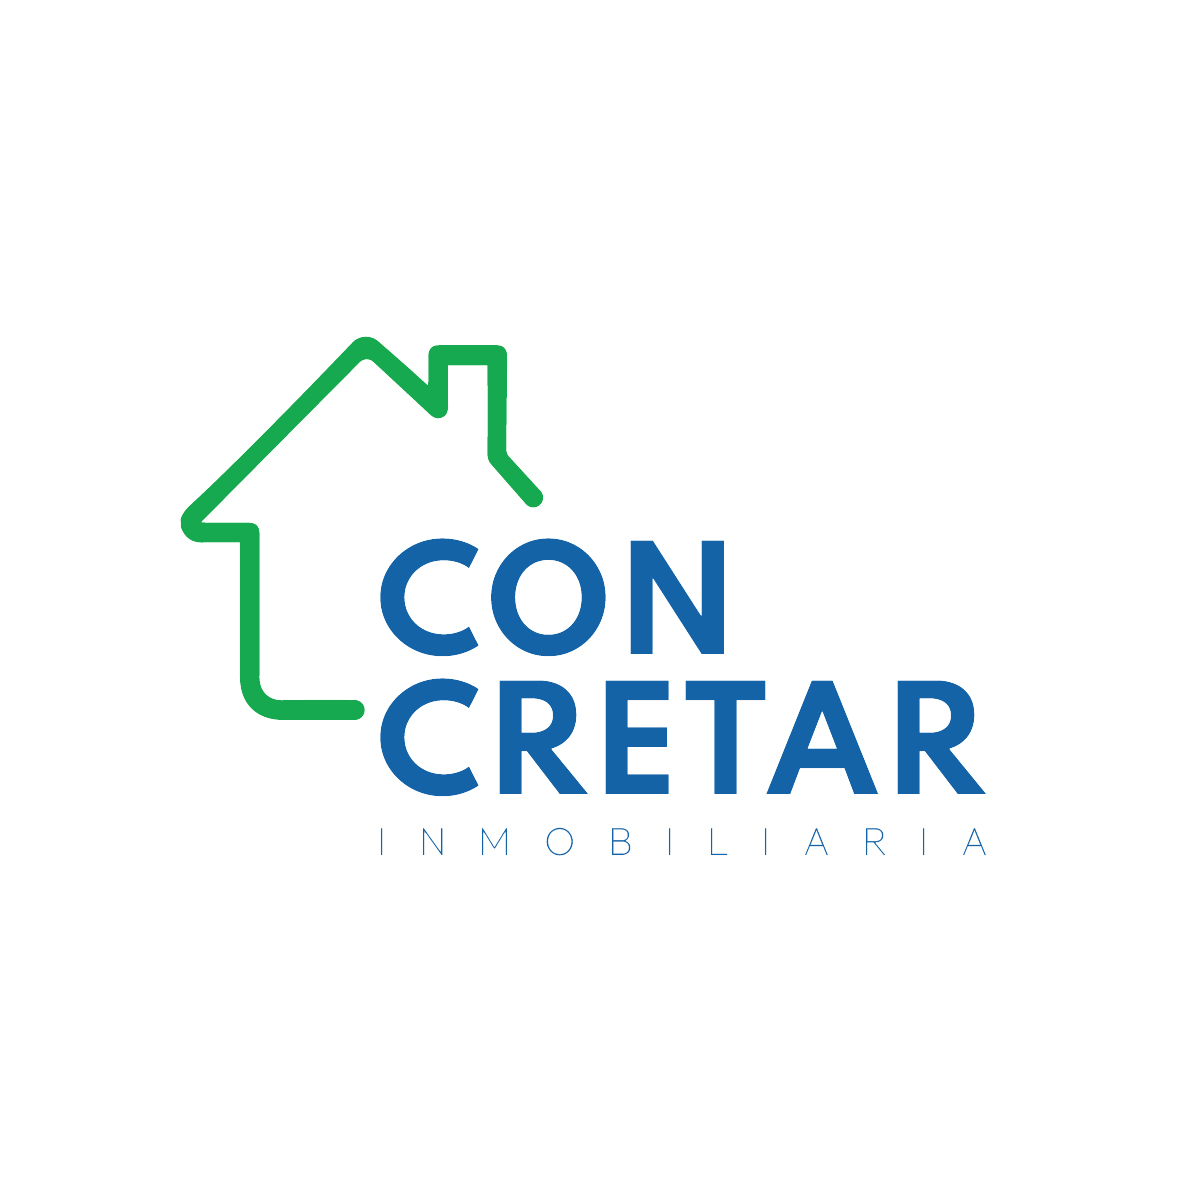 (c) Concretar.com.co